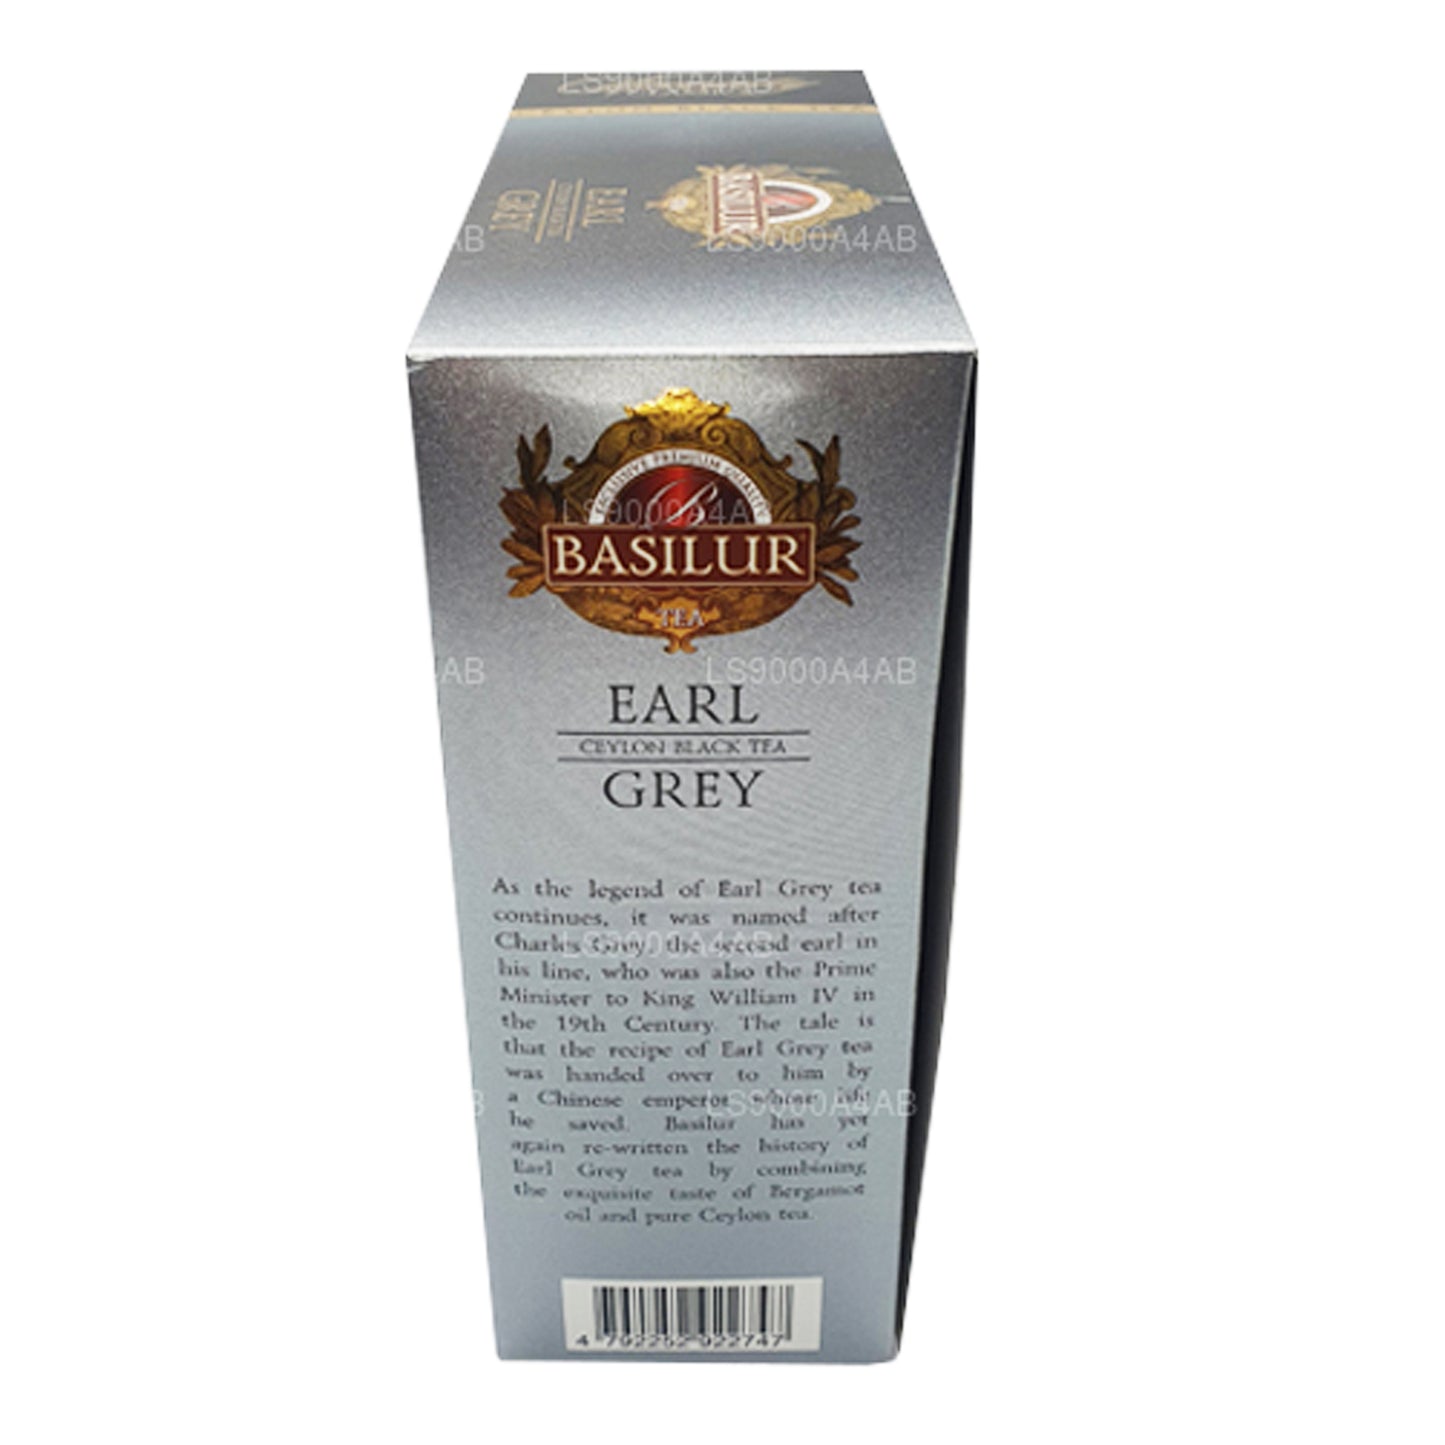 شاي باسيلور الكلاسيكي الفاخر إيرل جراي سيلان الأسود (200 جم) 100 كيس شاي